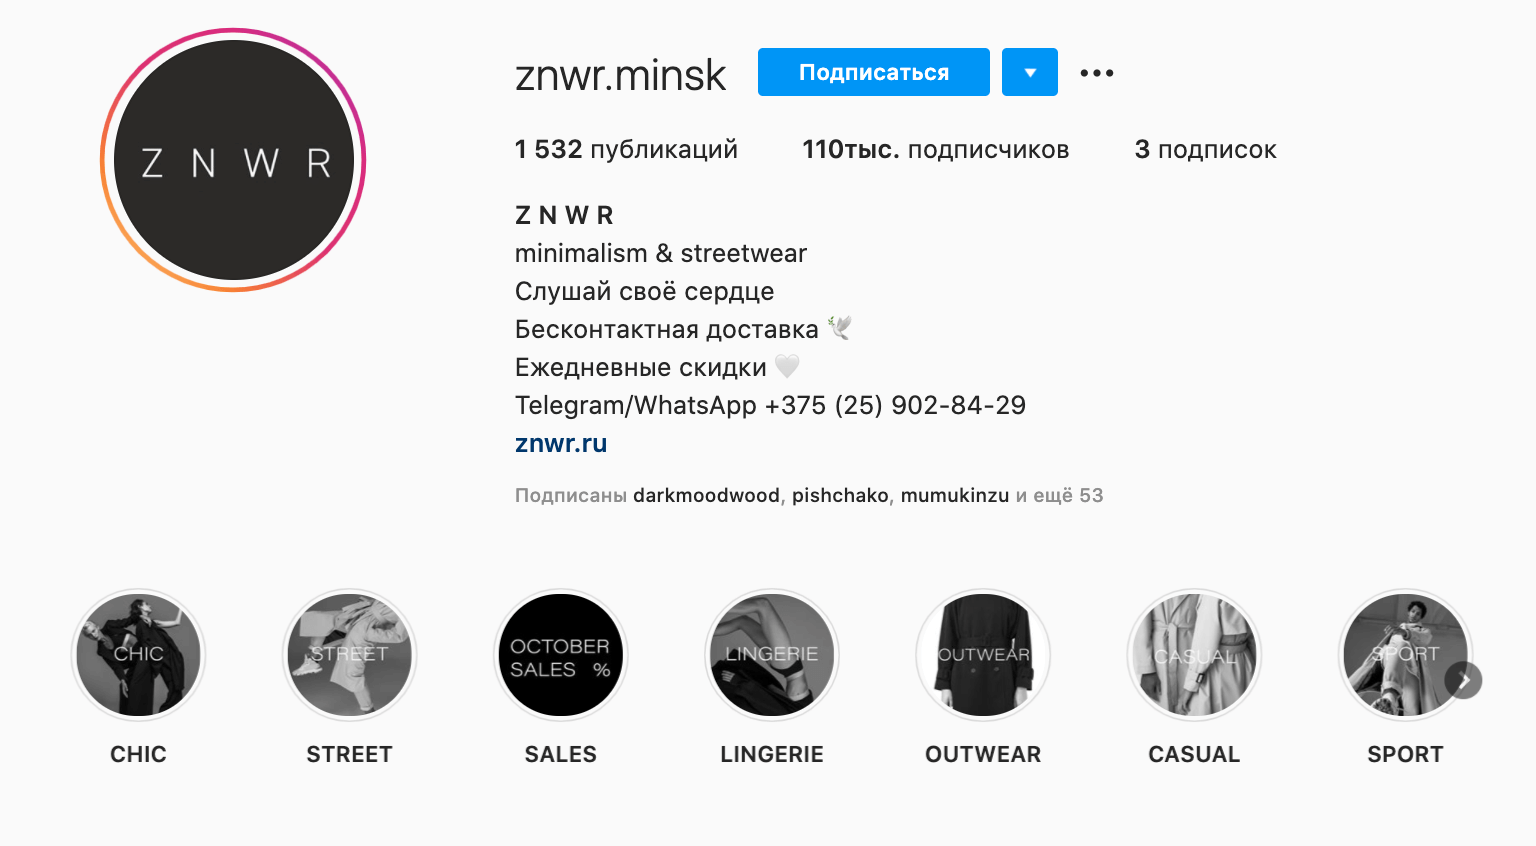 Вариант как создать иконки для Актуального в Инстаграме* на примере @znwr.minsk